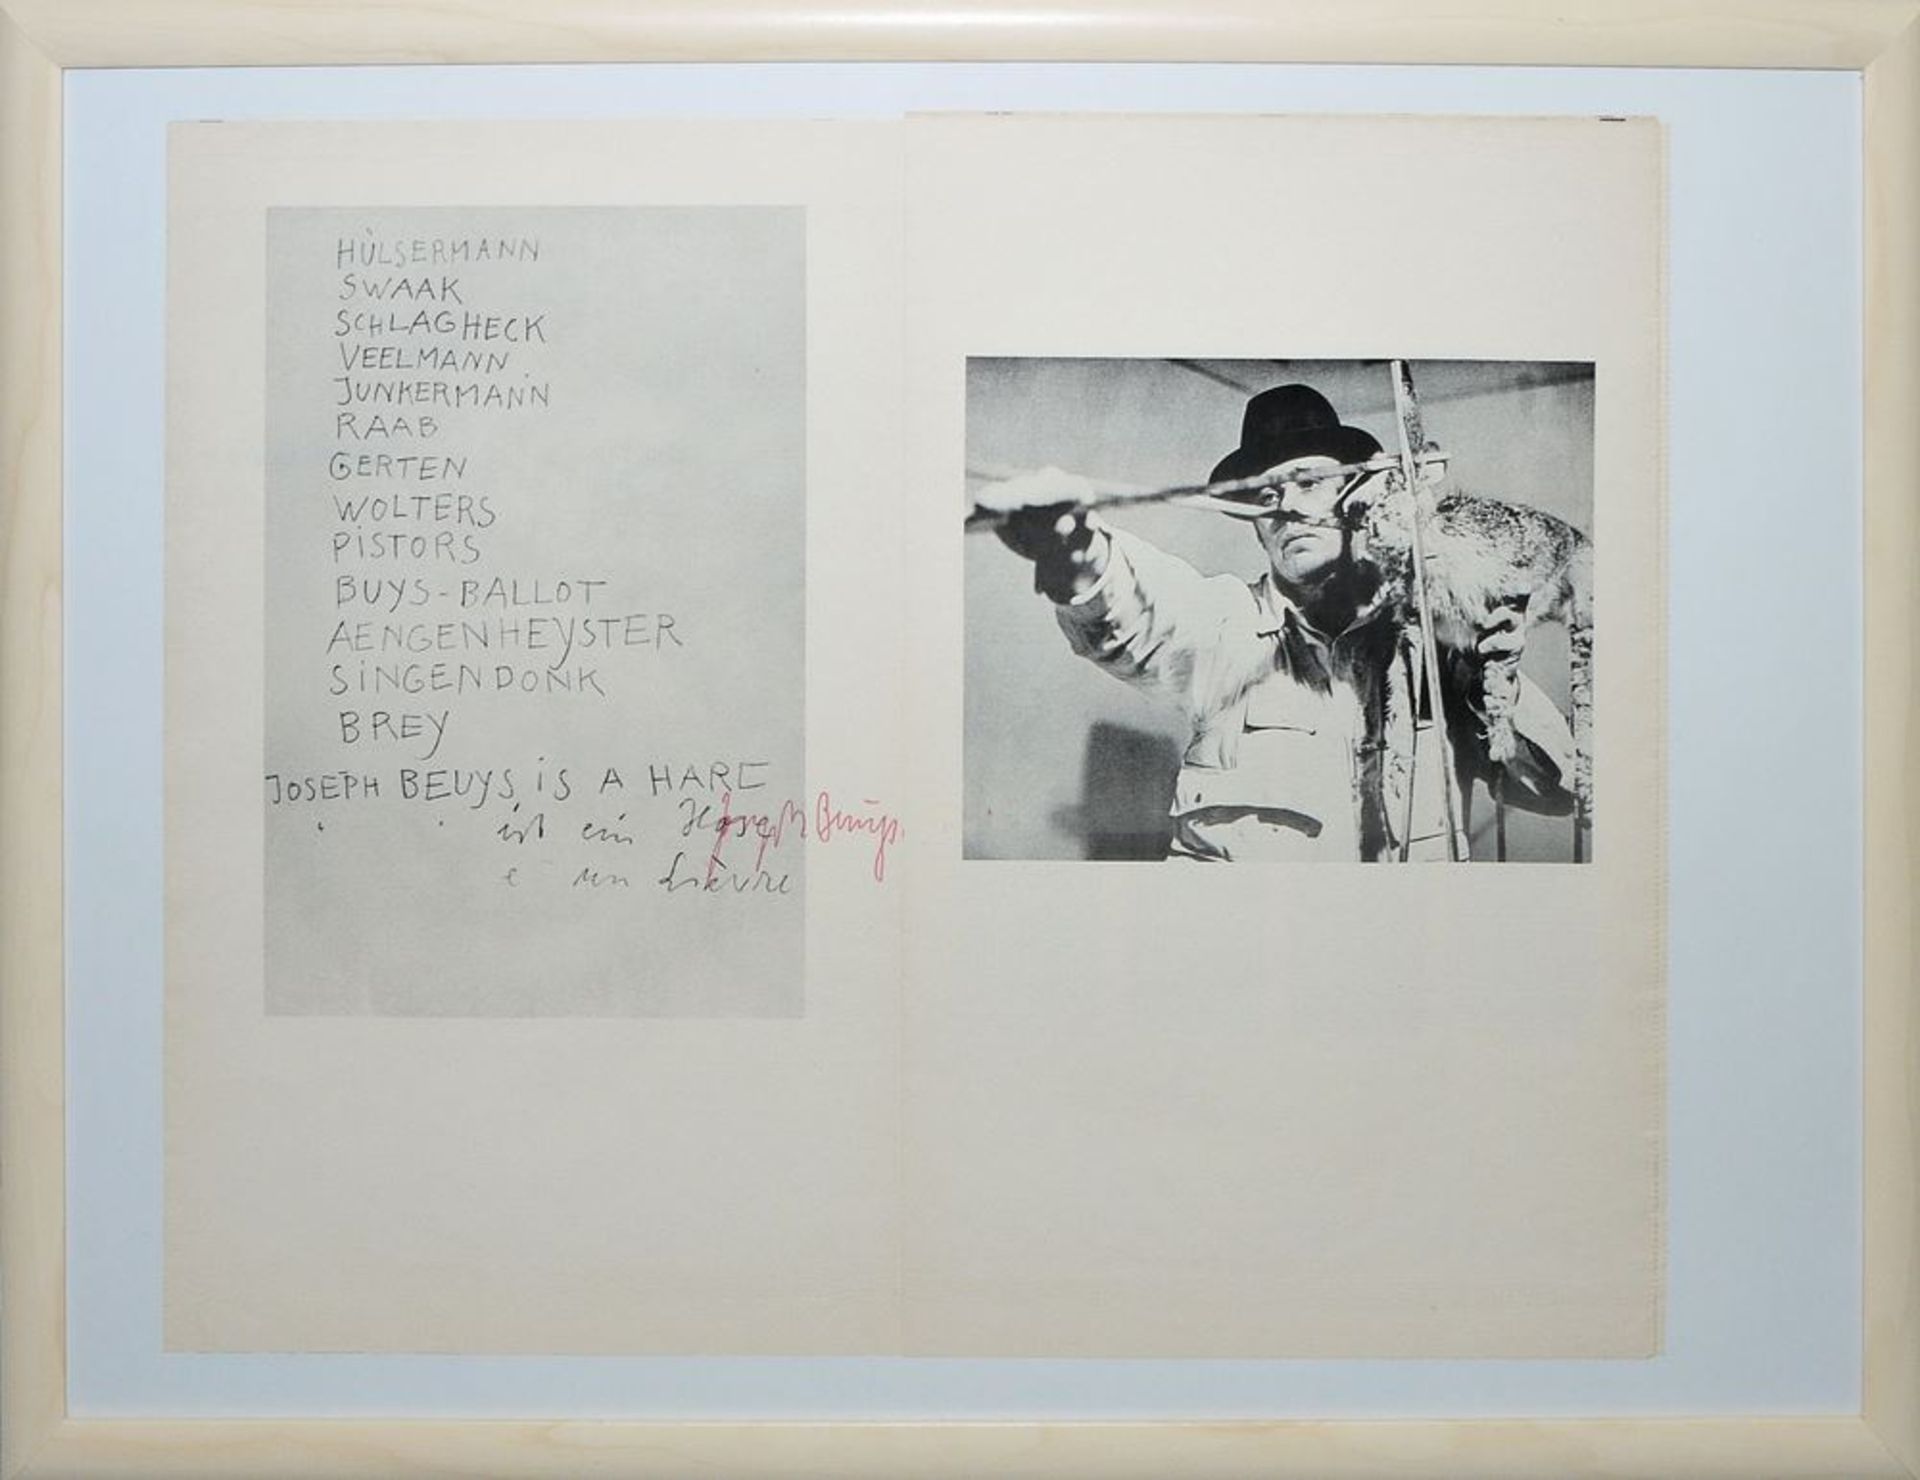 Joseph Beuys, signierte Zeitung "Pour" aus den 1970er Jahren, gerahmt